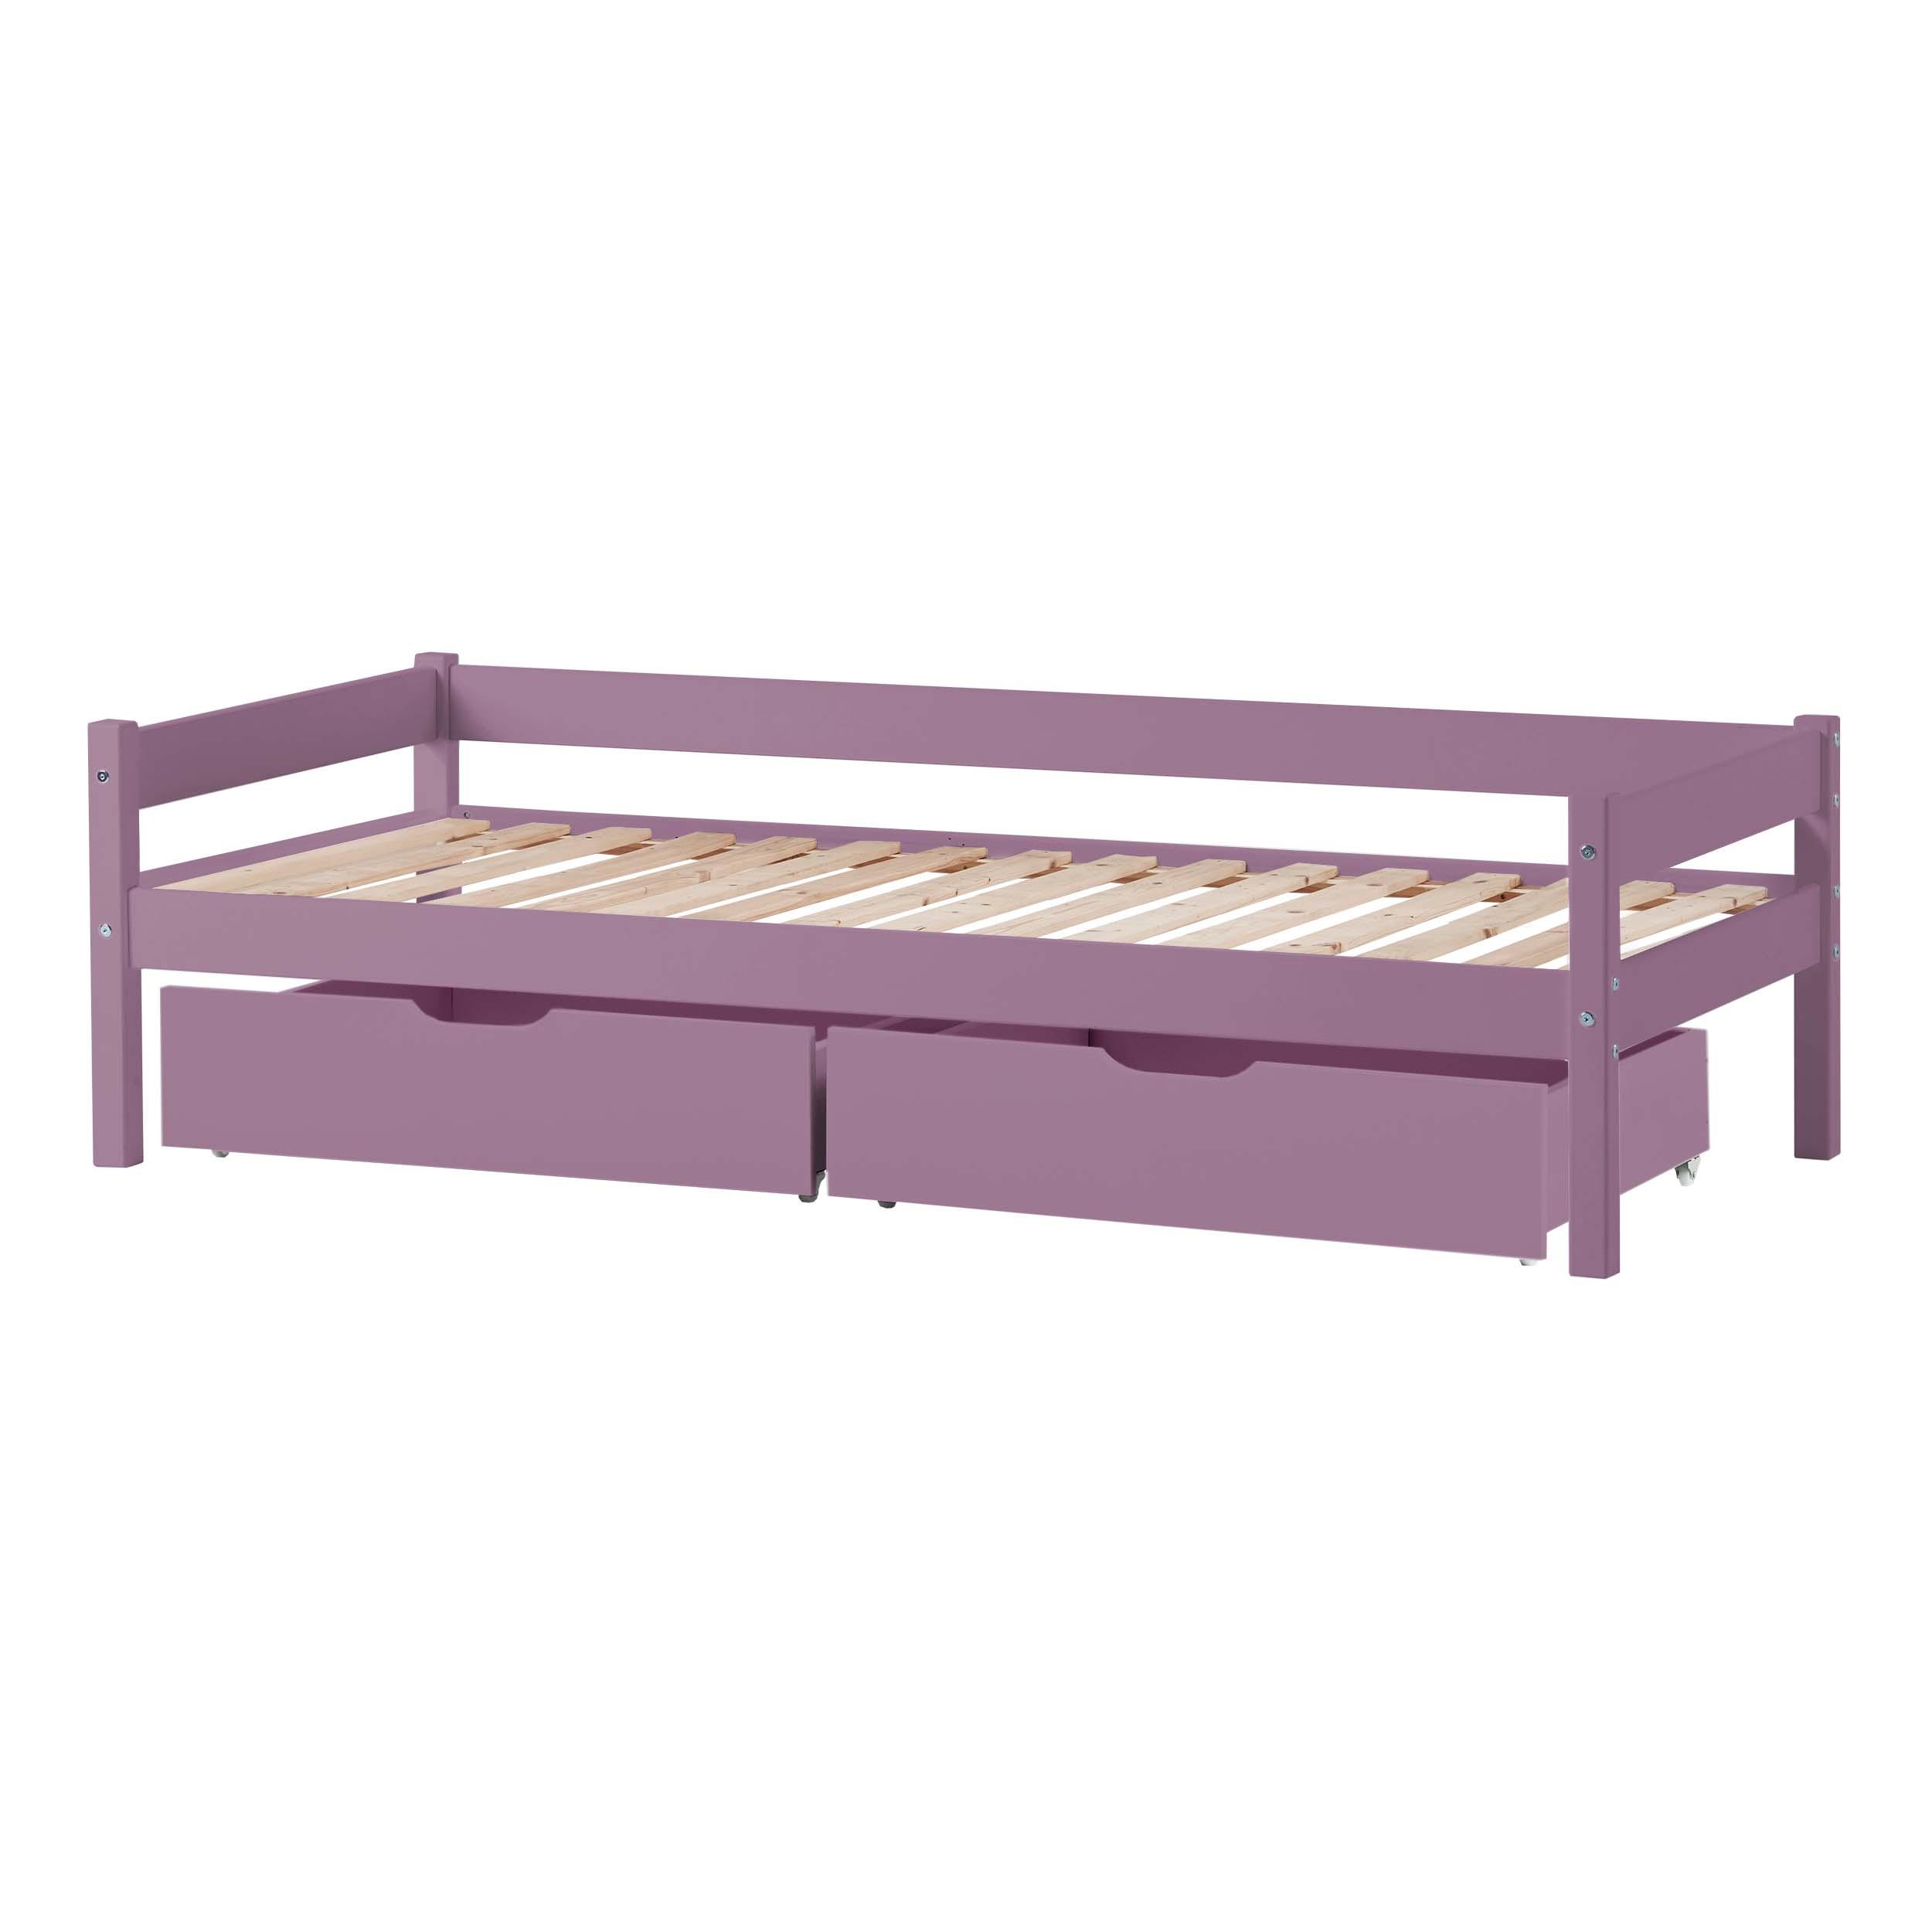 Paquete de cama: Cama juvenil 70x160 cm con cajones, Lavanda